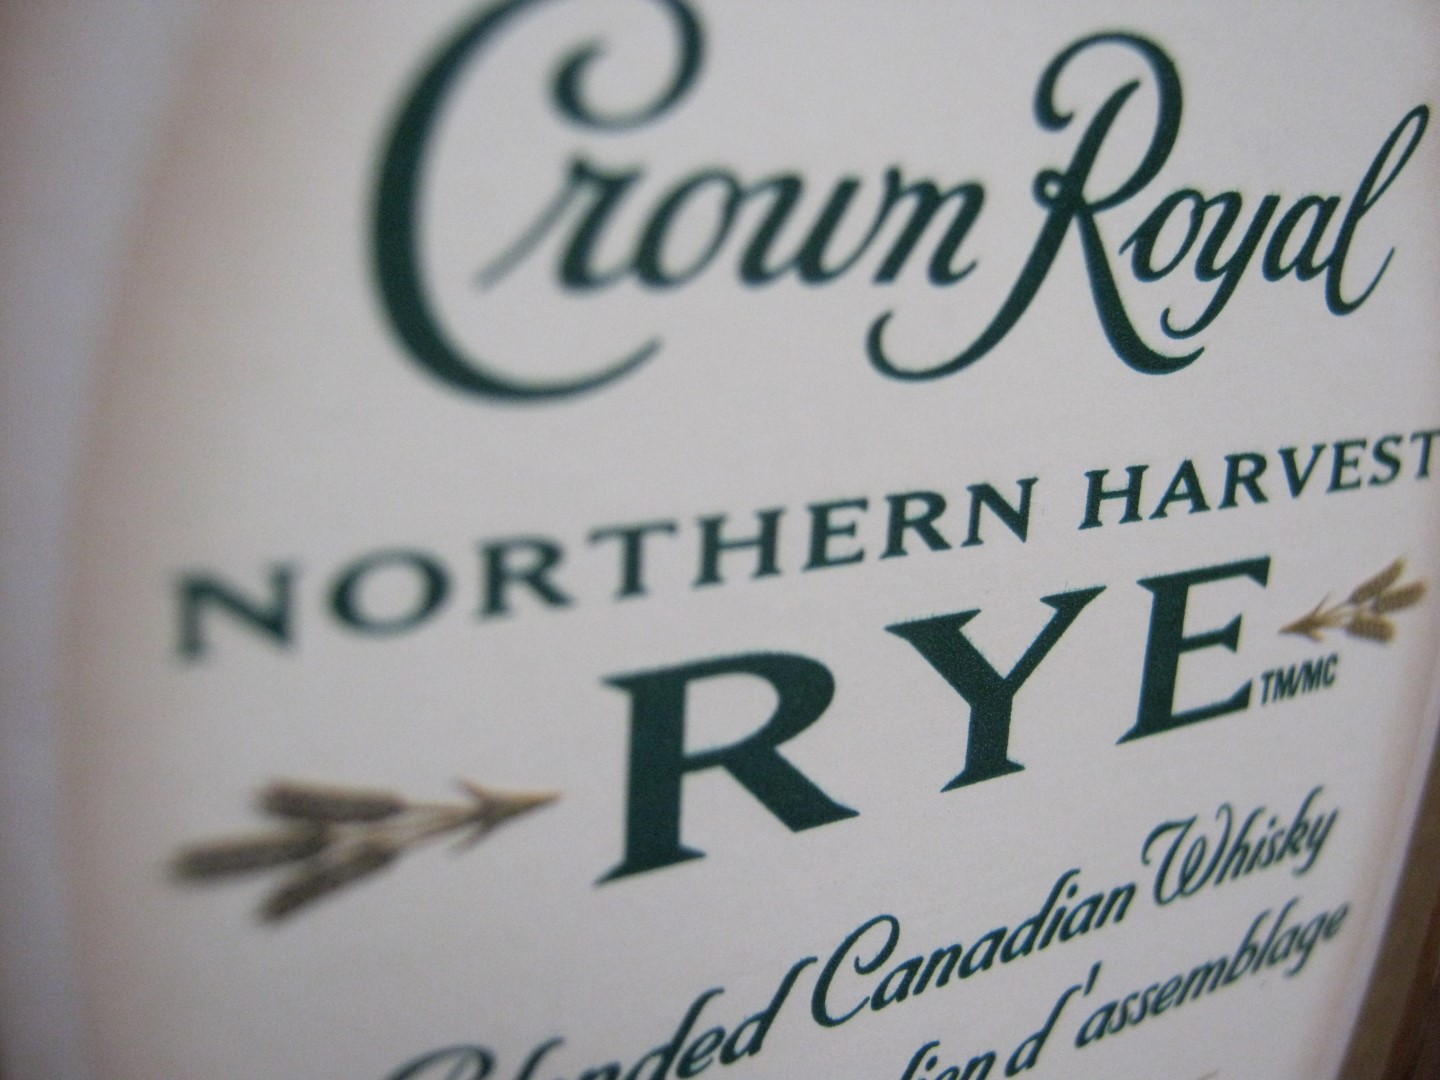 Crown Royal Northern Harvest.jpg